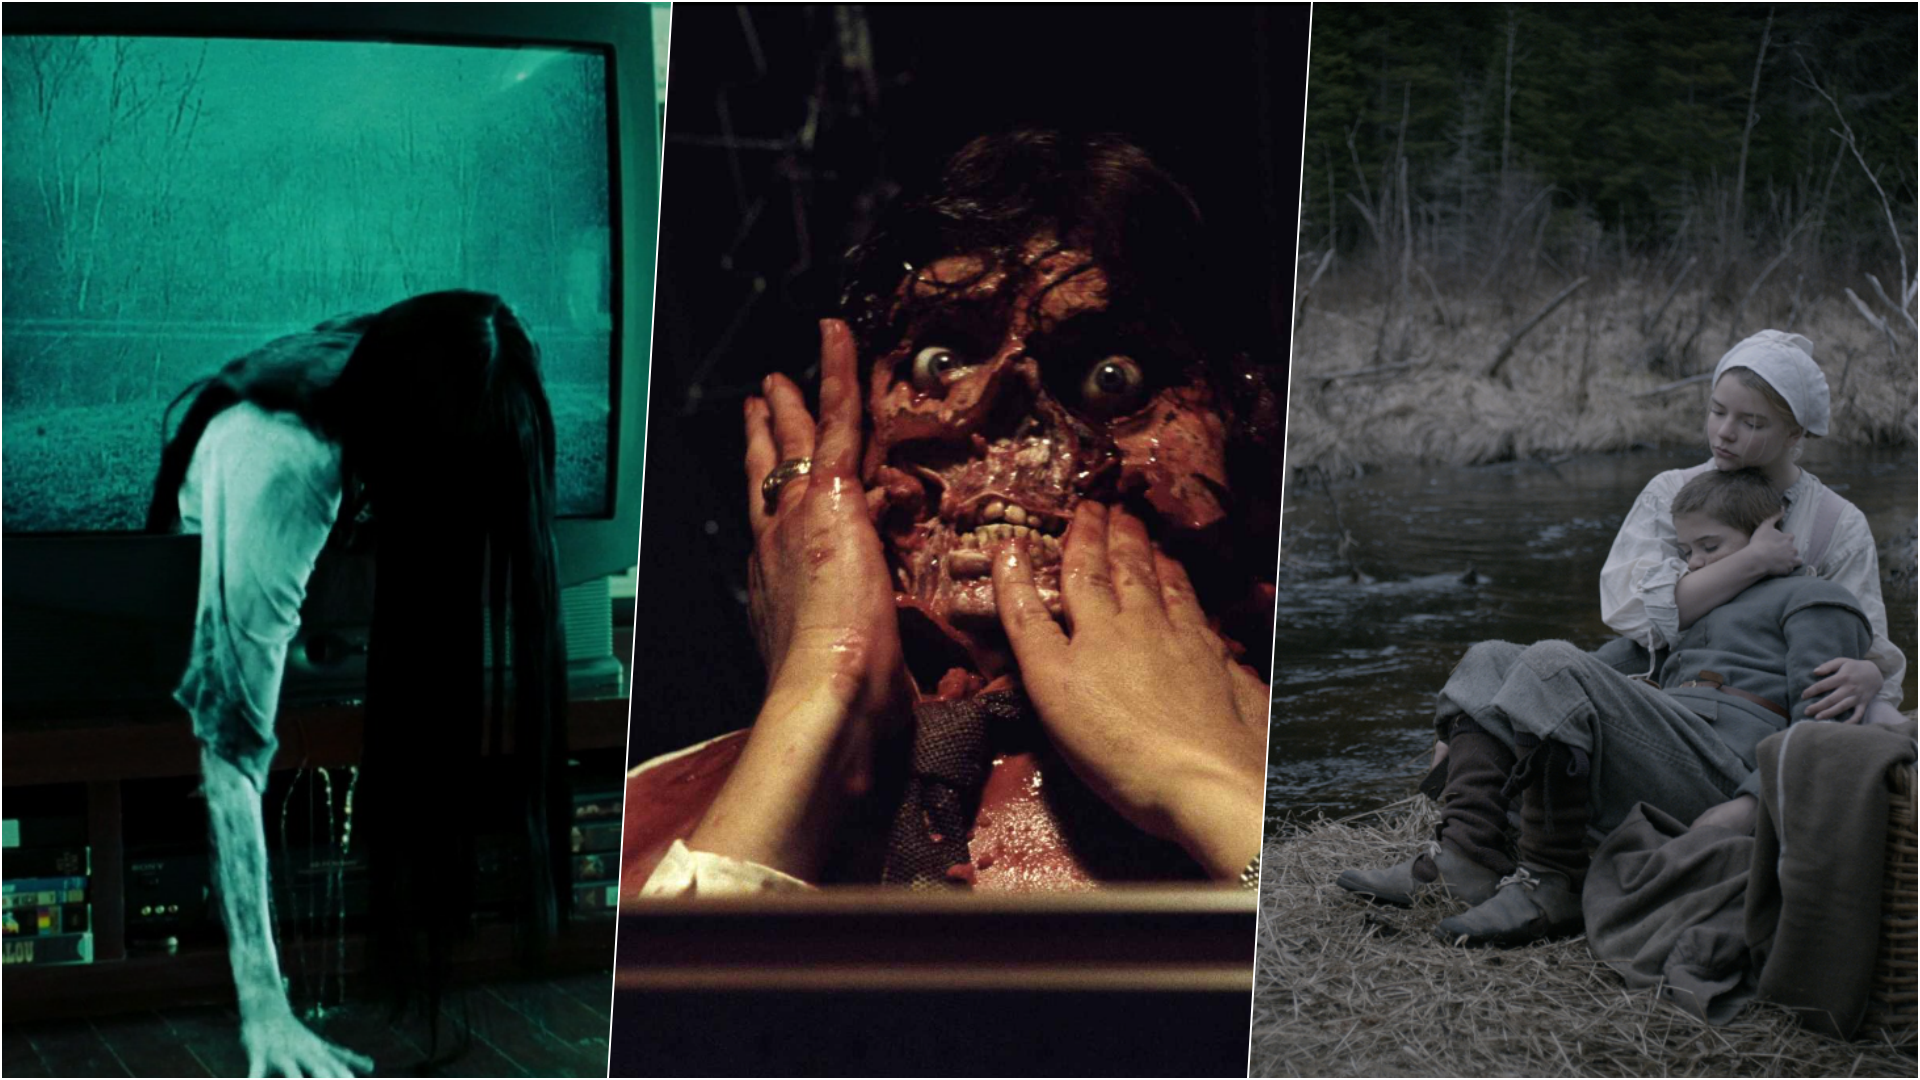 7 filmes de terror para assistir no  Prime Video